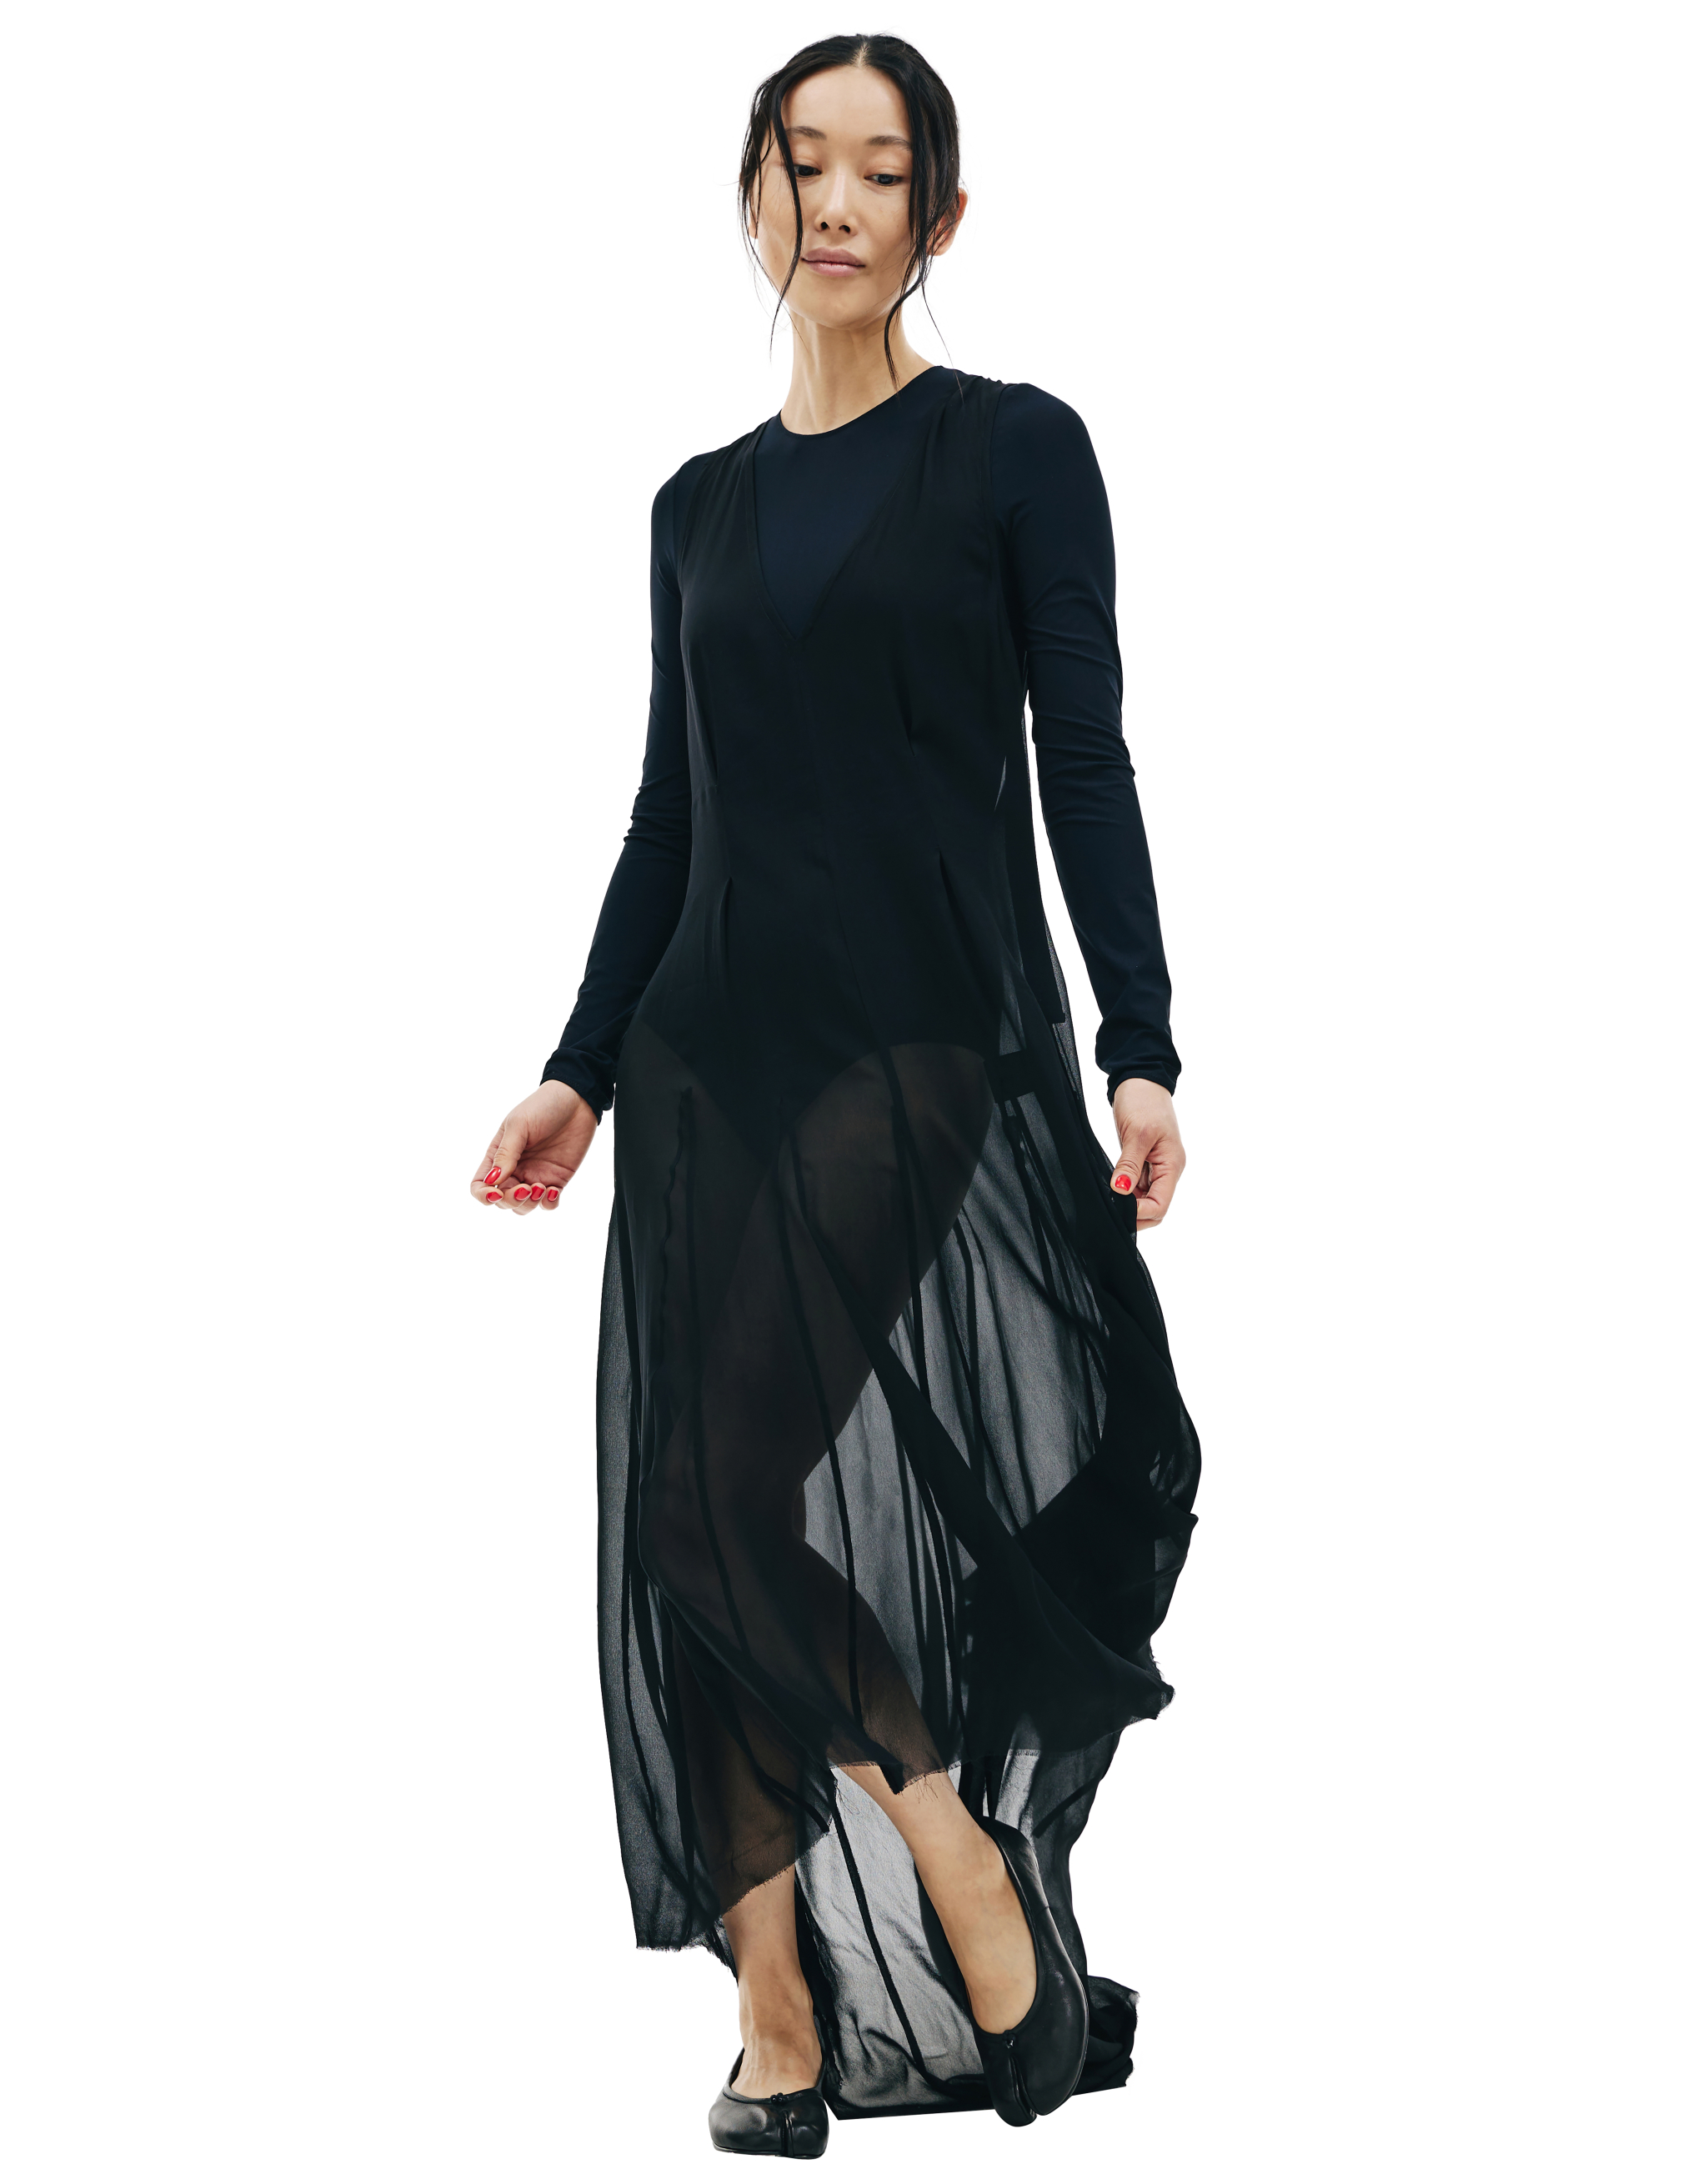 Черное полупрозрачное платье с удлиненной спинкой Ann Demeulemeester 2002-2260-140-099, размер 40;38 - фото 1